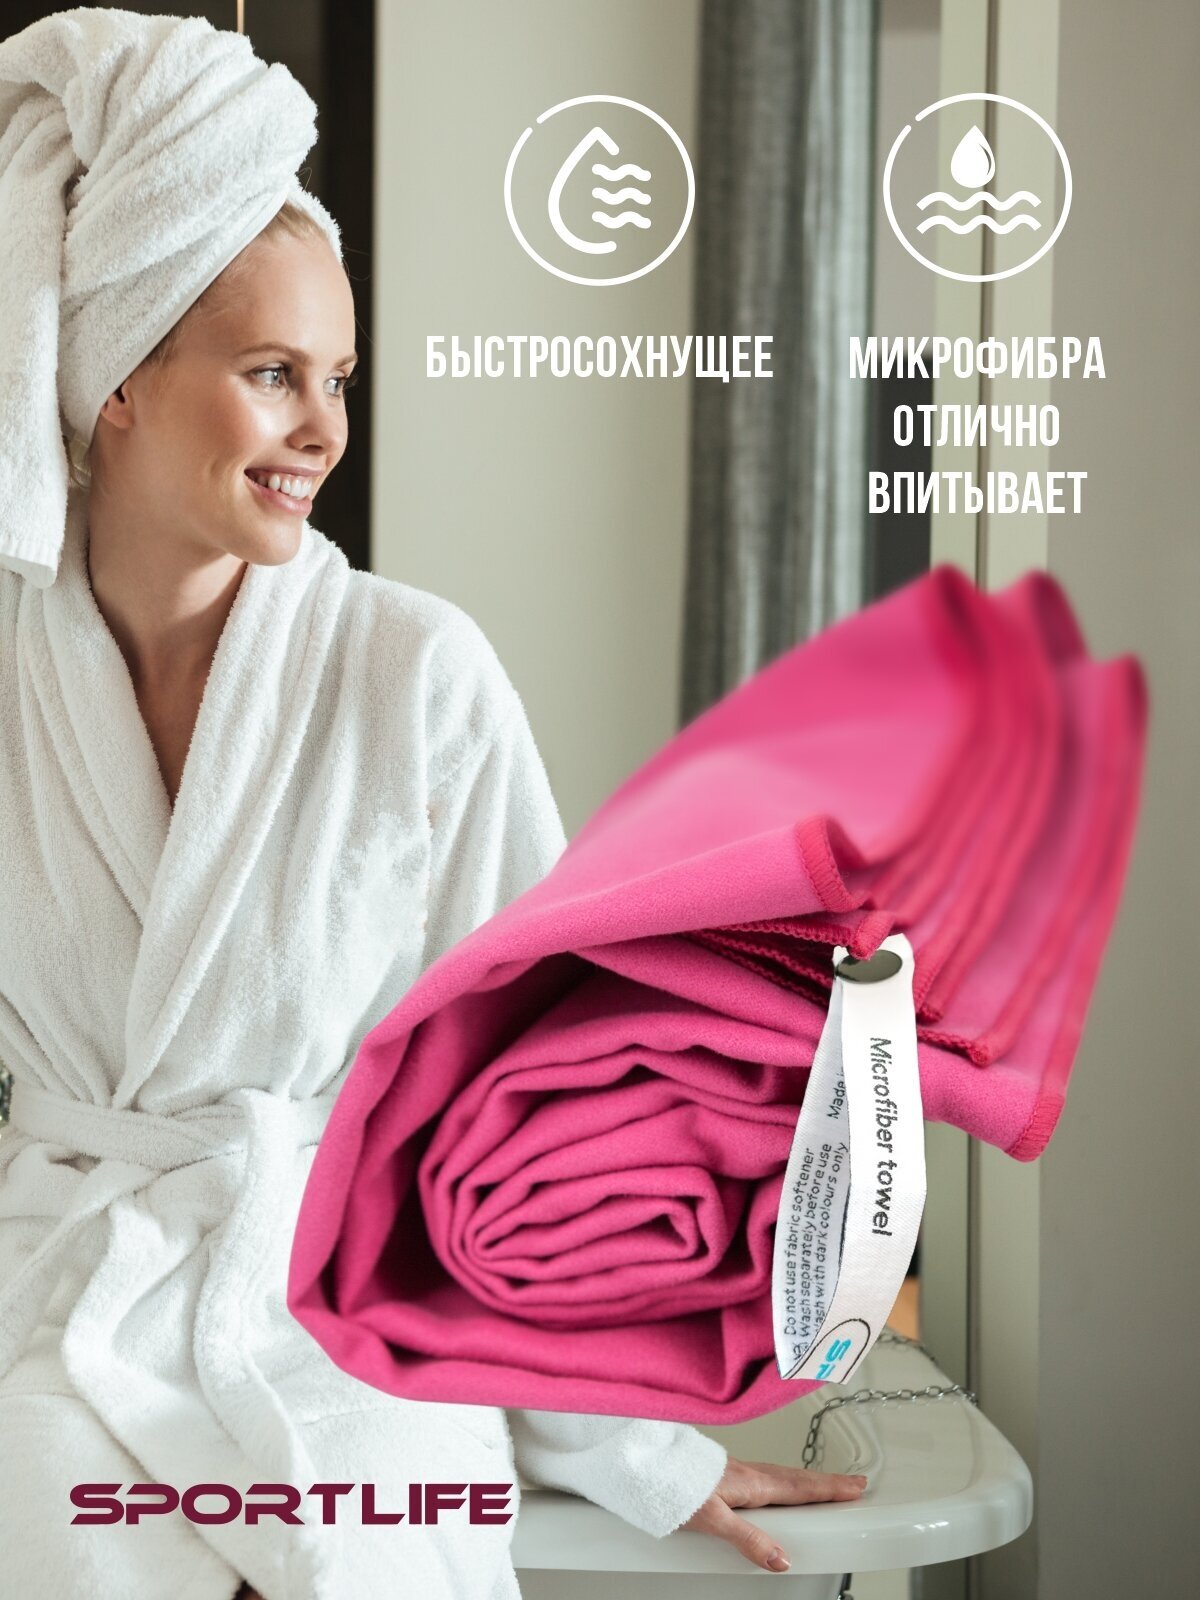 Полотенце спортивное из микрофибры, цвет ярко-розовый / полотенце микрофибра / пляжное полотенце 80х130 см в упаковке